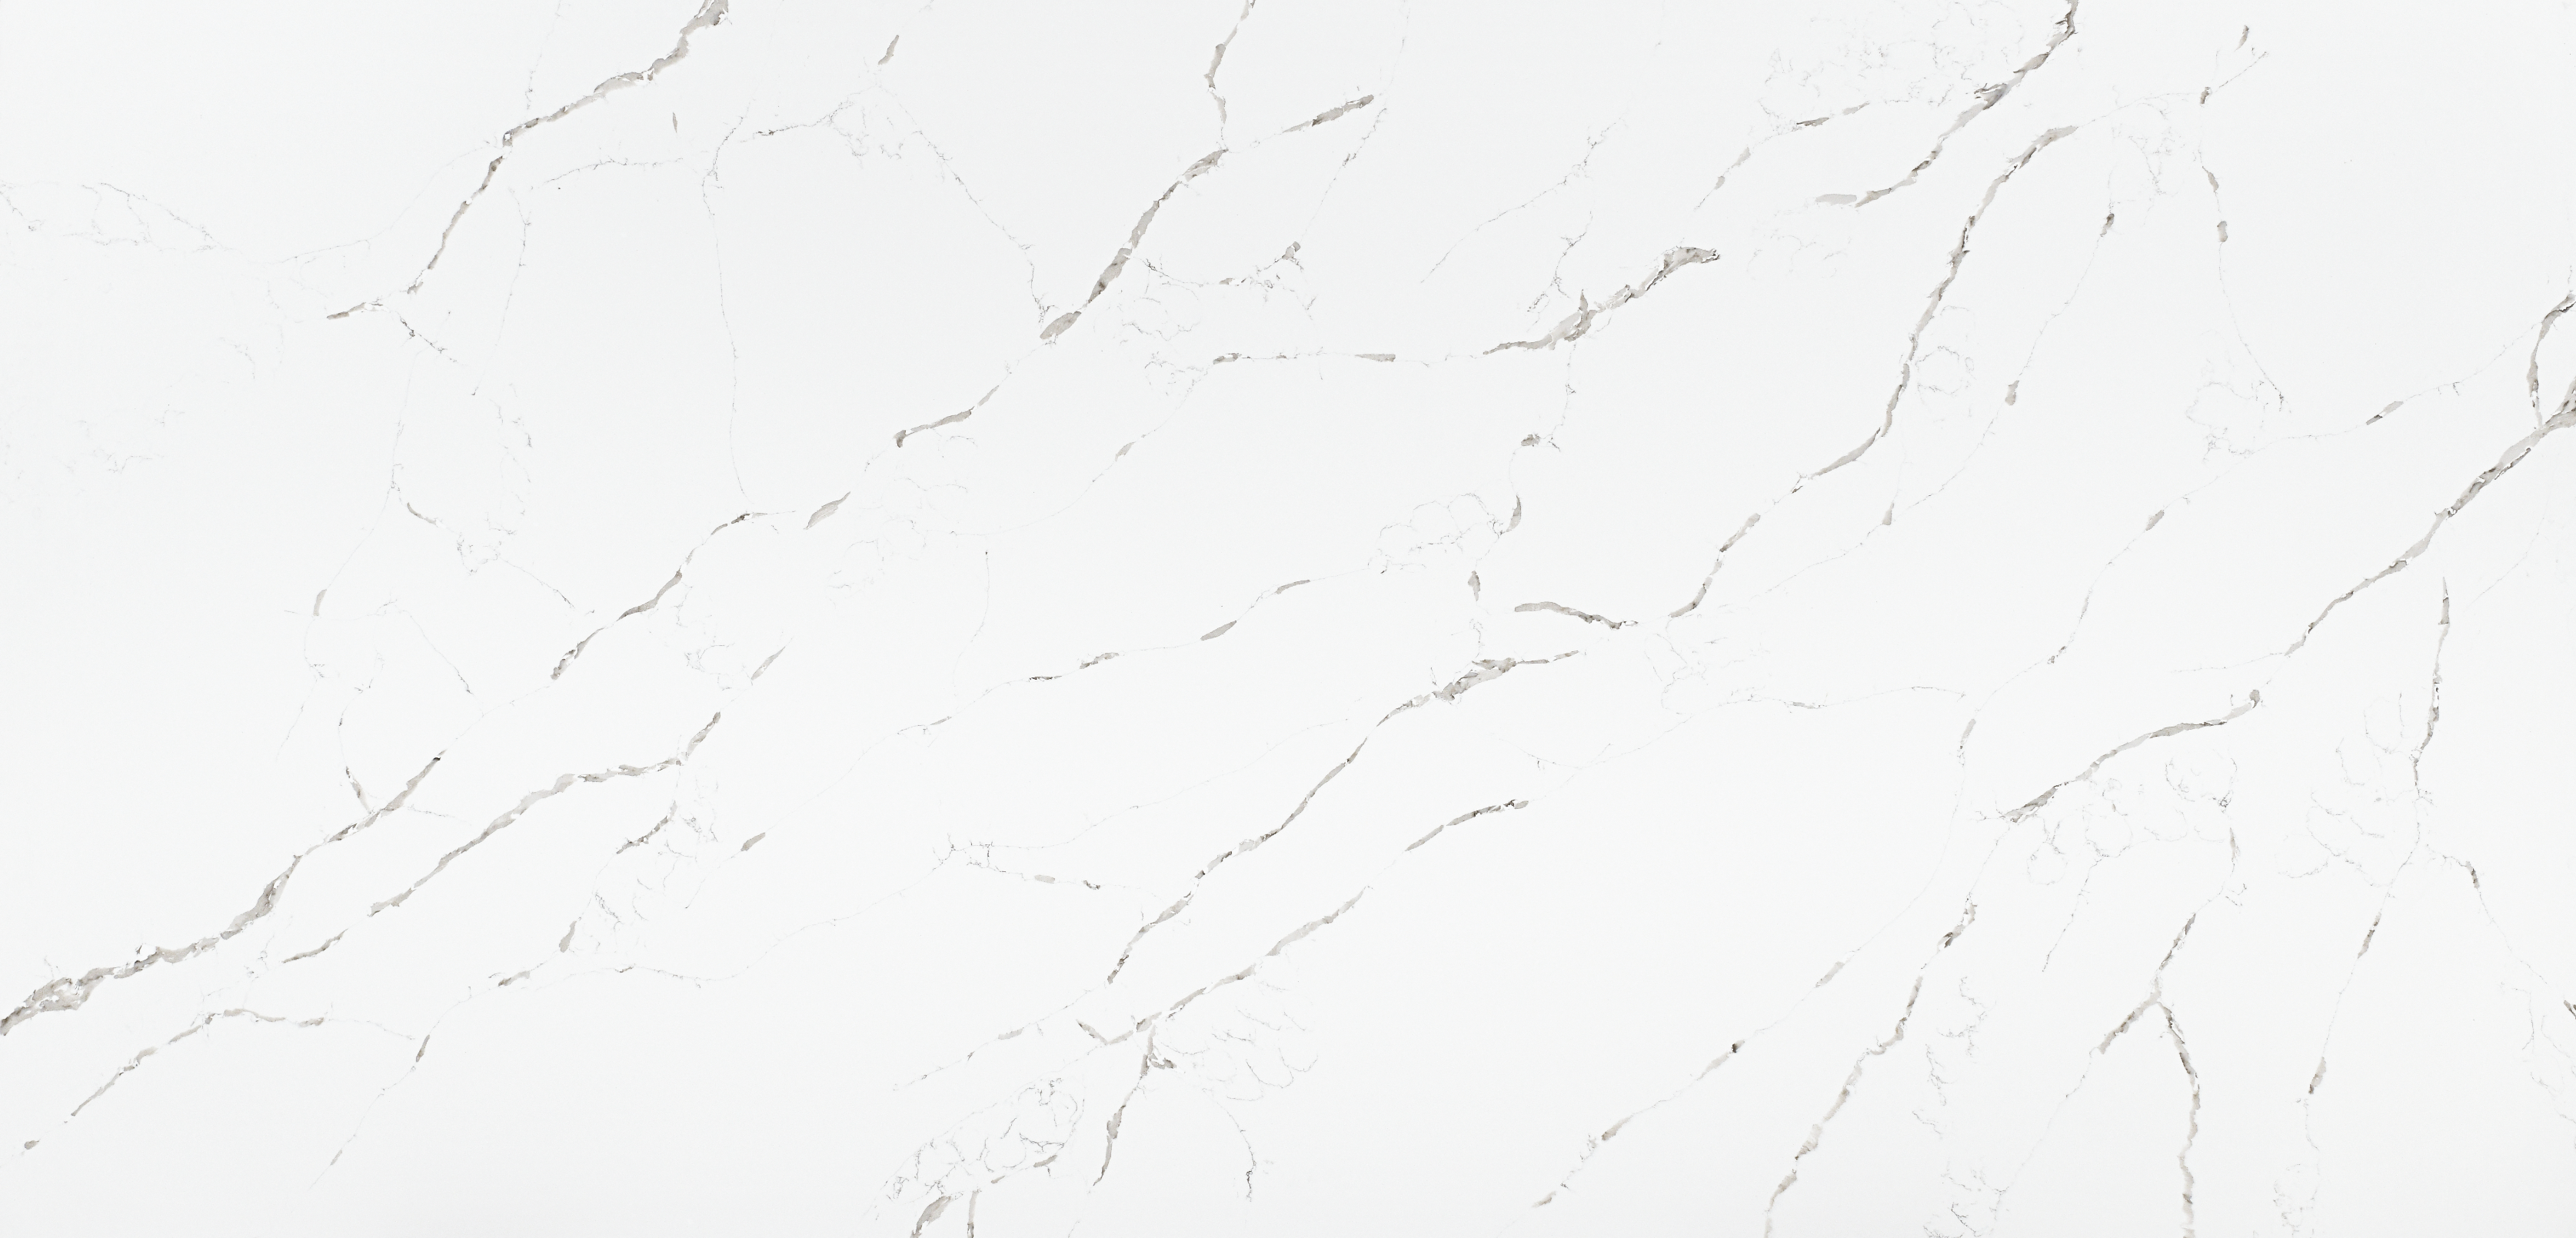 HanStone Quartz Calacatta Extra white quartz with bold veining full slab